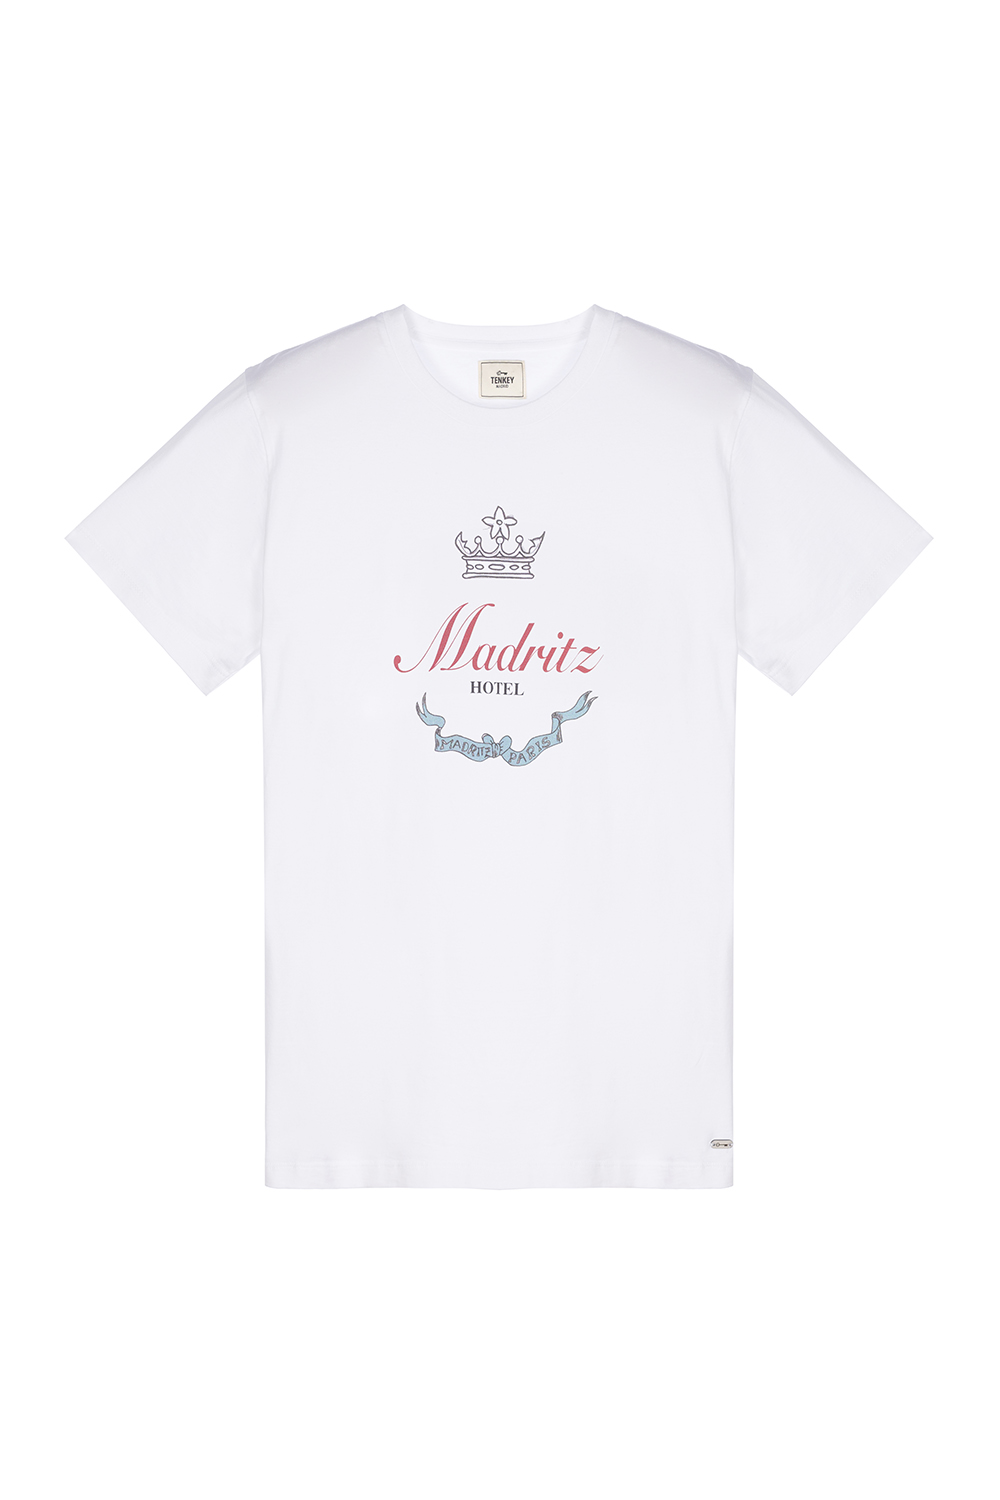 Camiseta Over Madritz